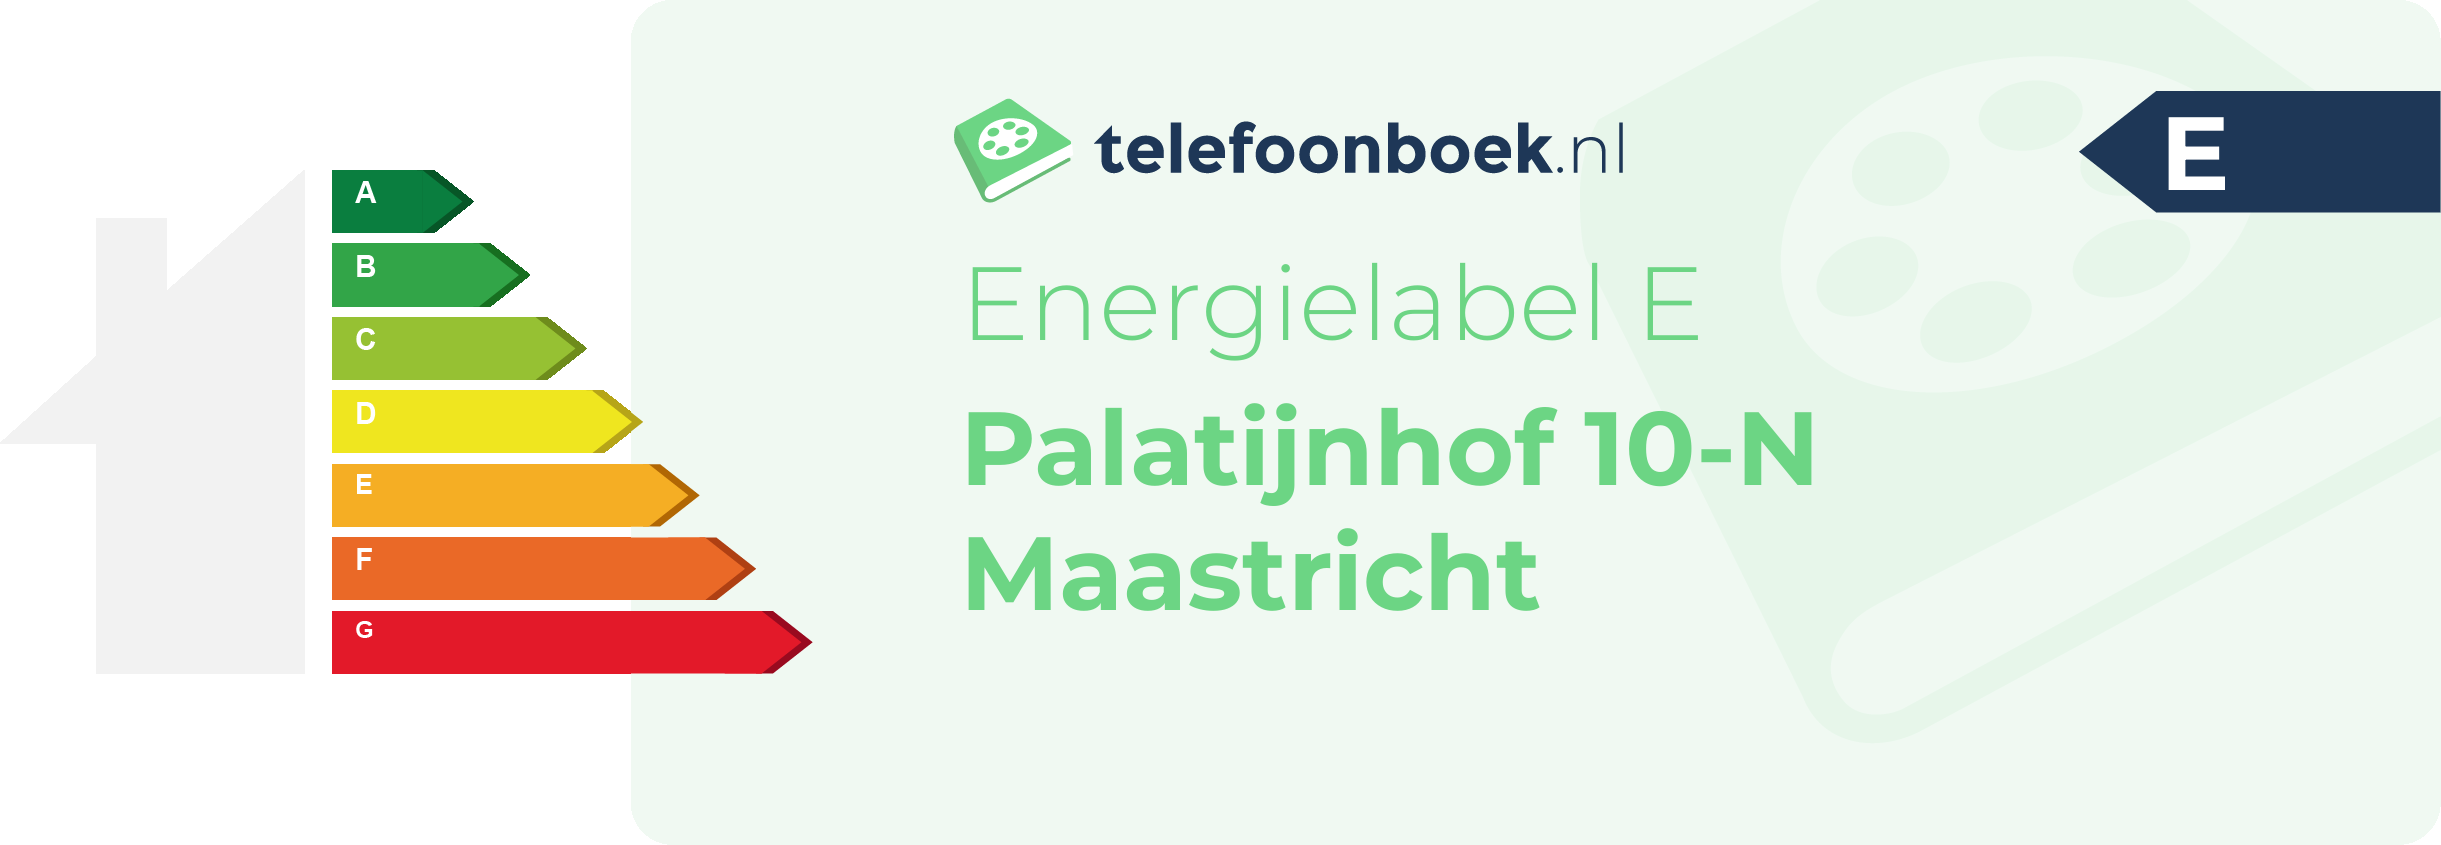 Energielabel Palatijnhof 10-N Maastricht